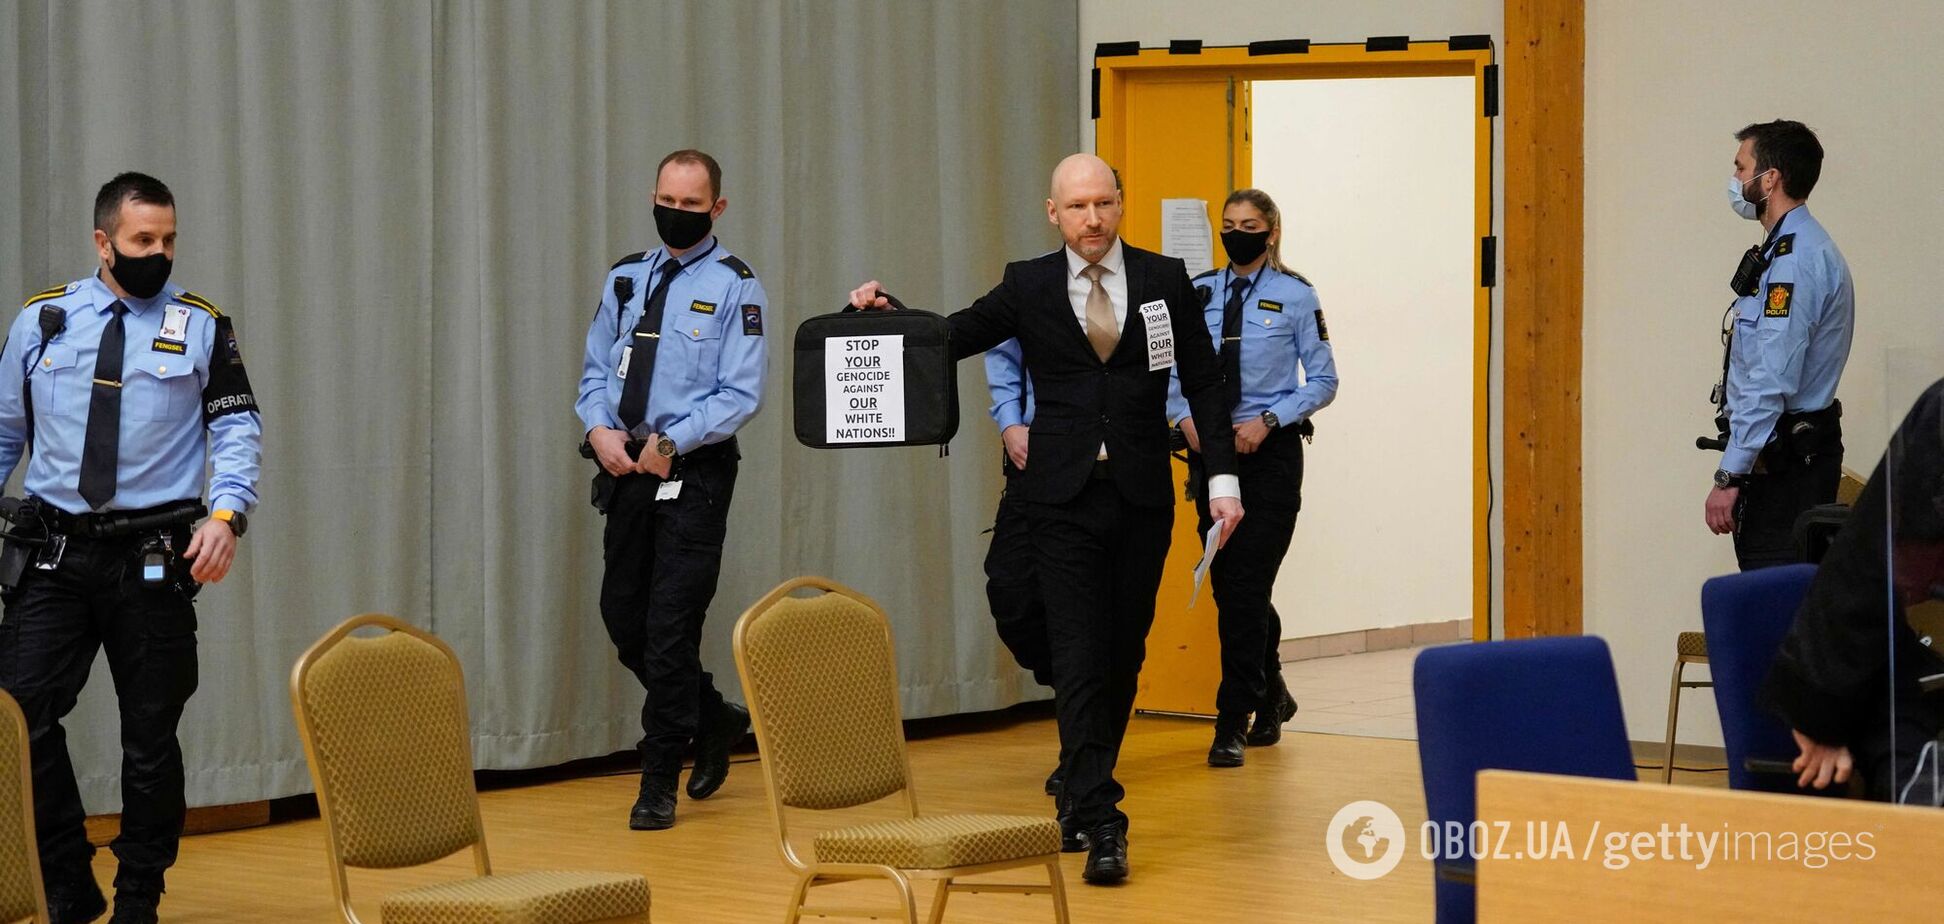 Норвежский суд отказался досрочно выпустить террориста Брейвика, убившего 77 человек